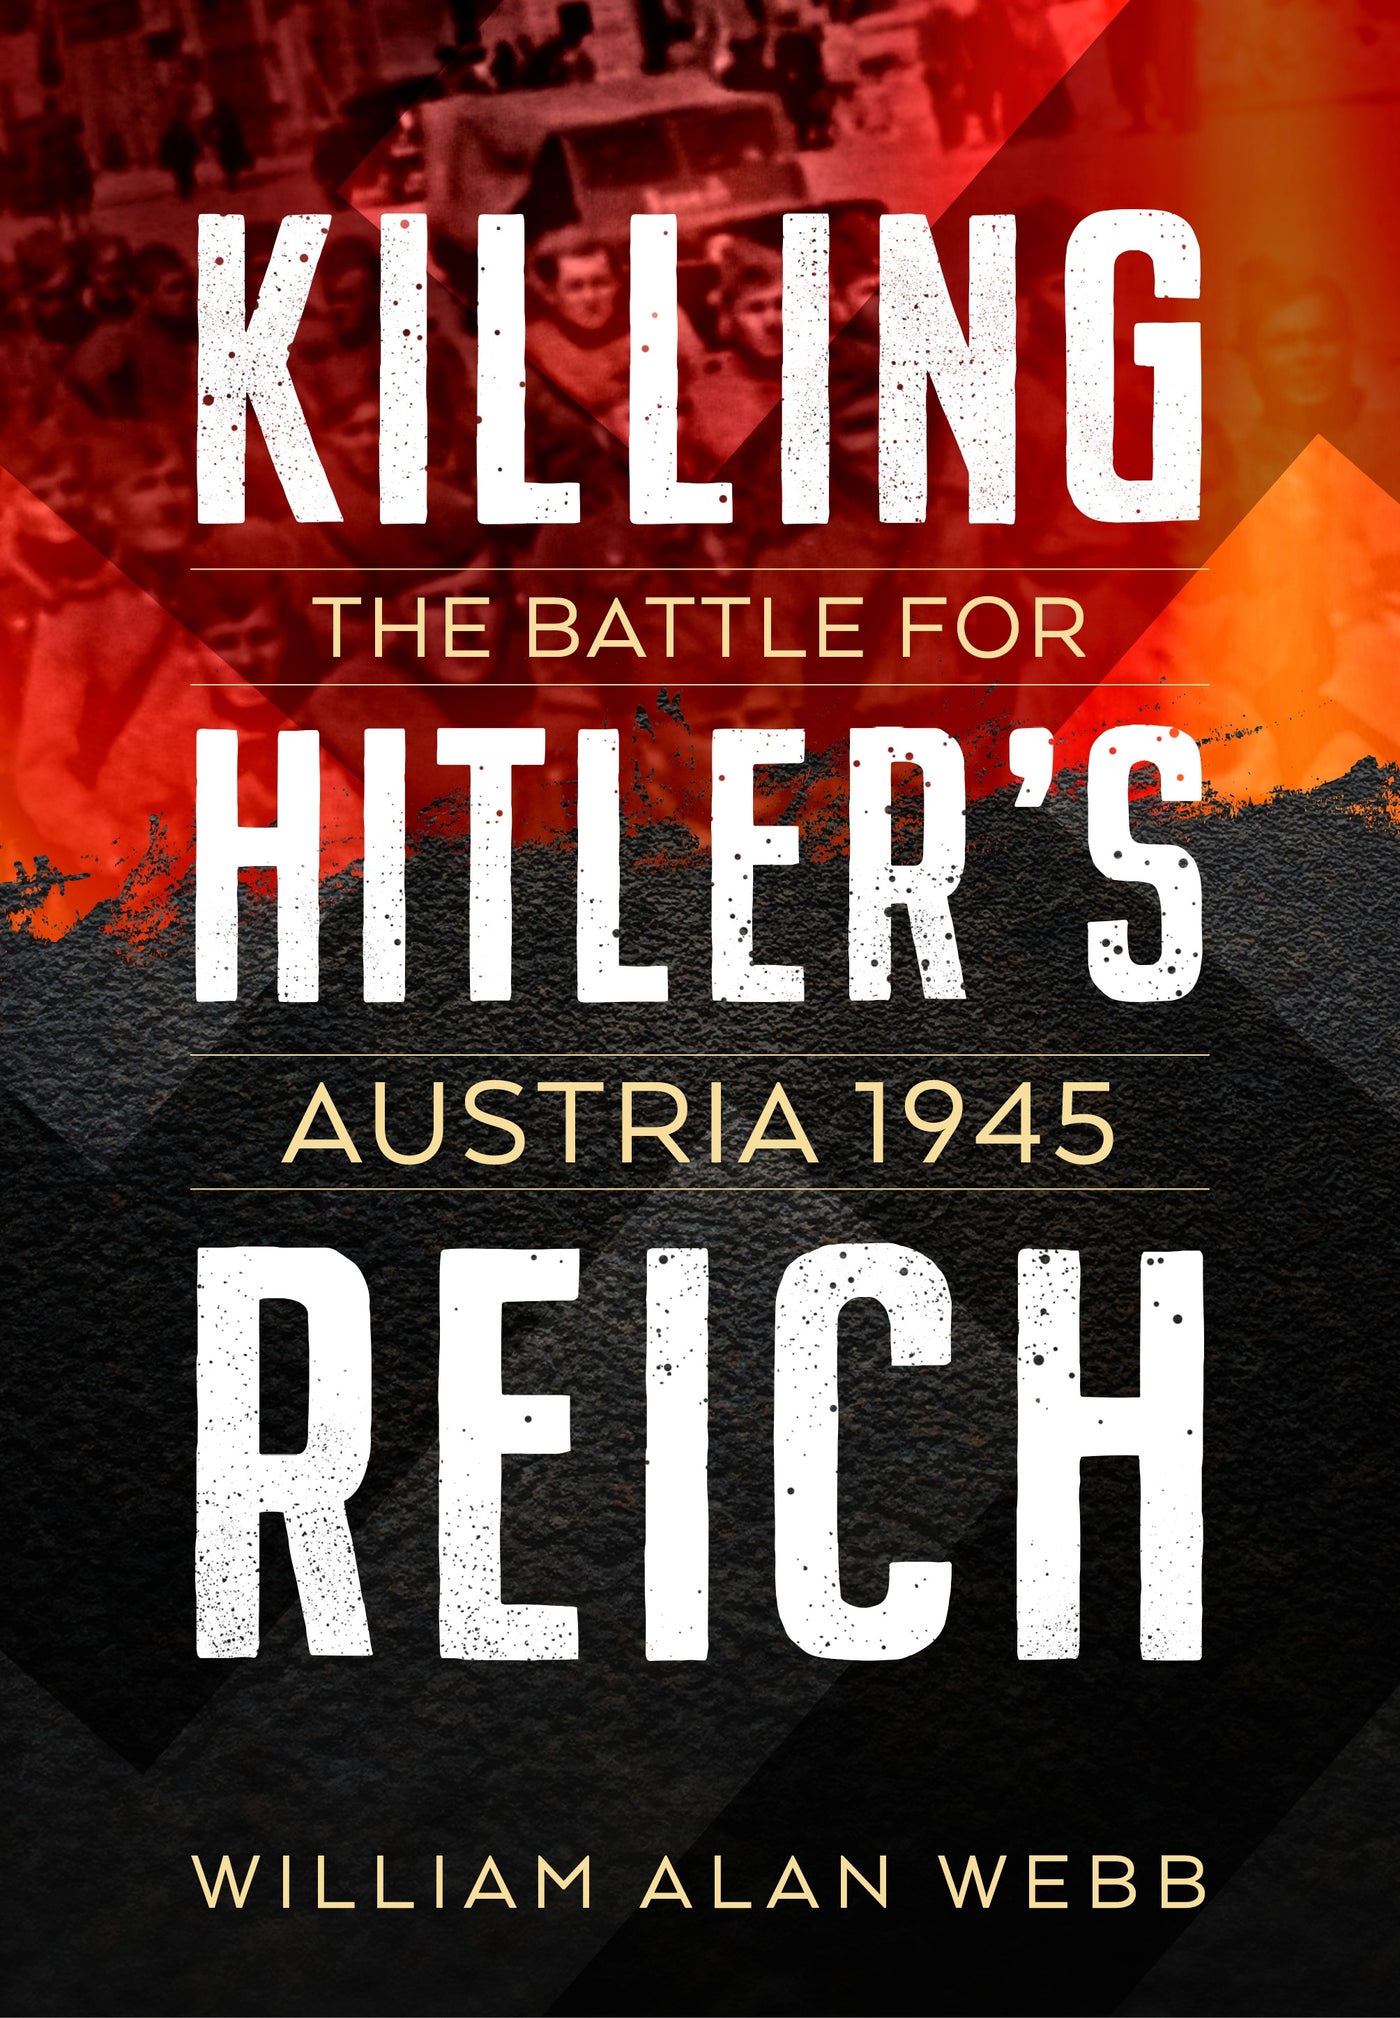 Killing Hitler's Reich